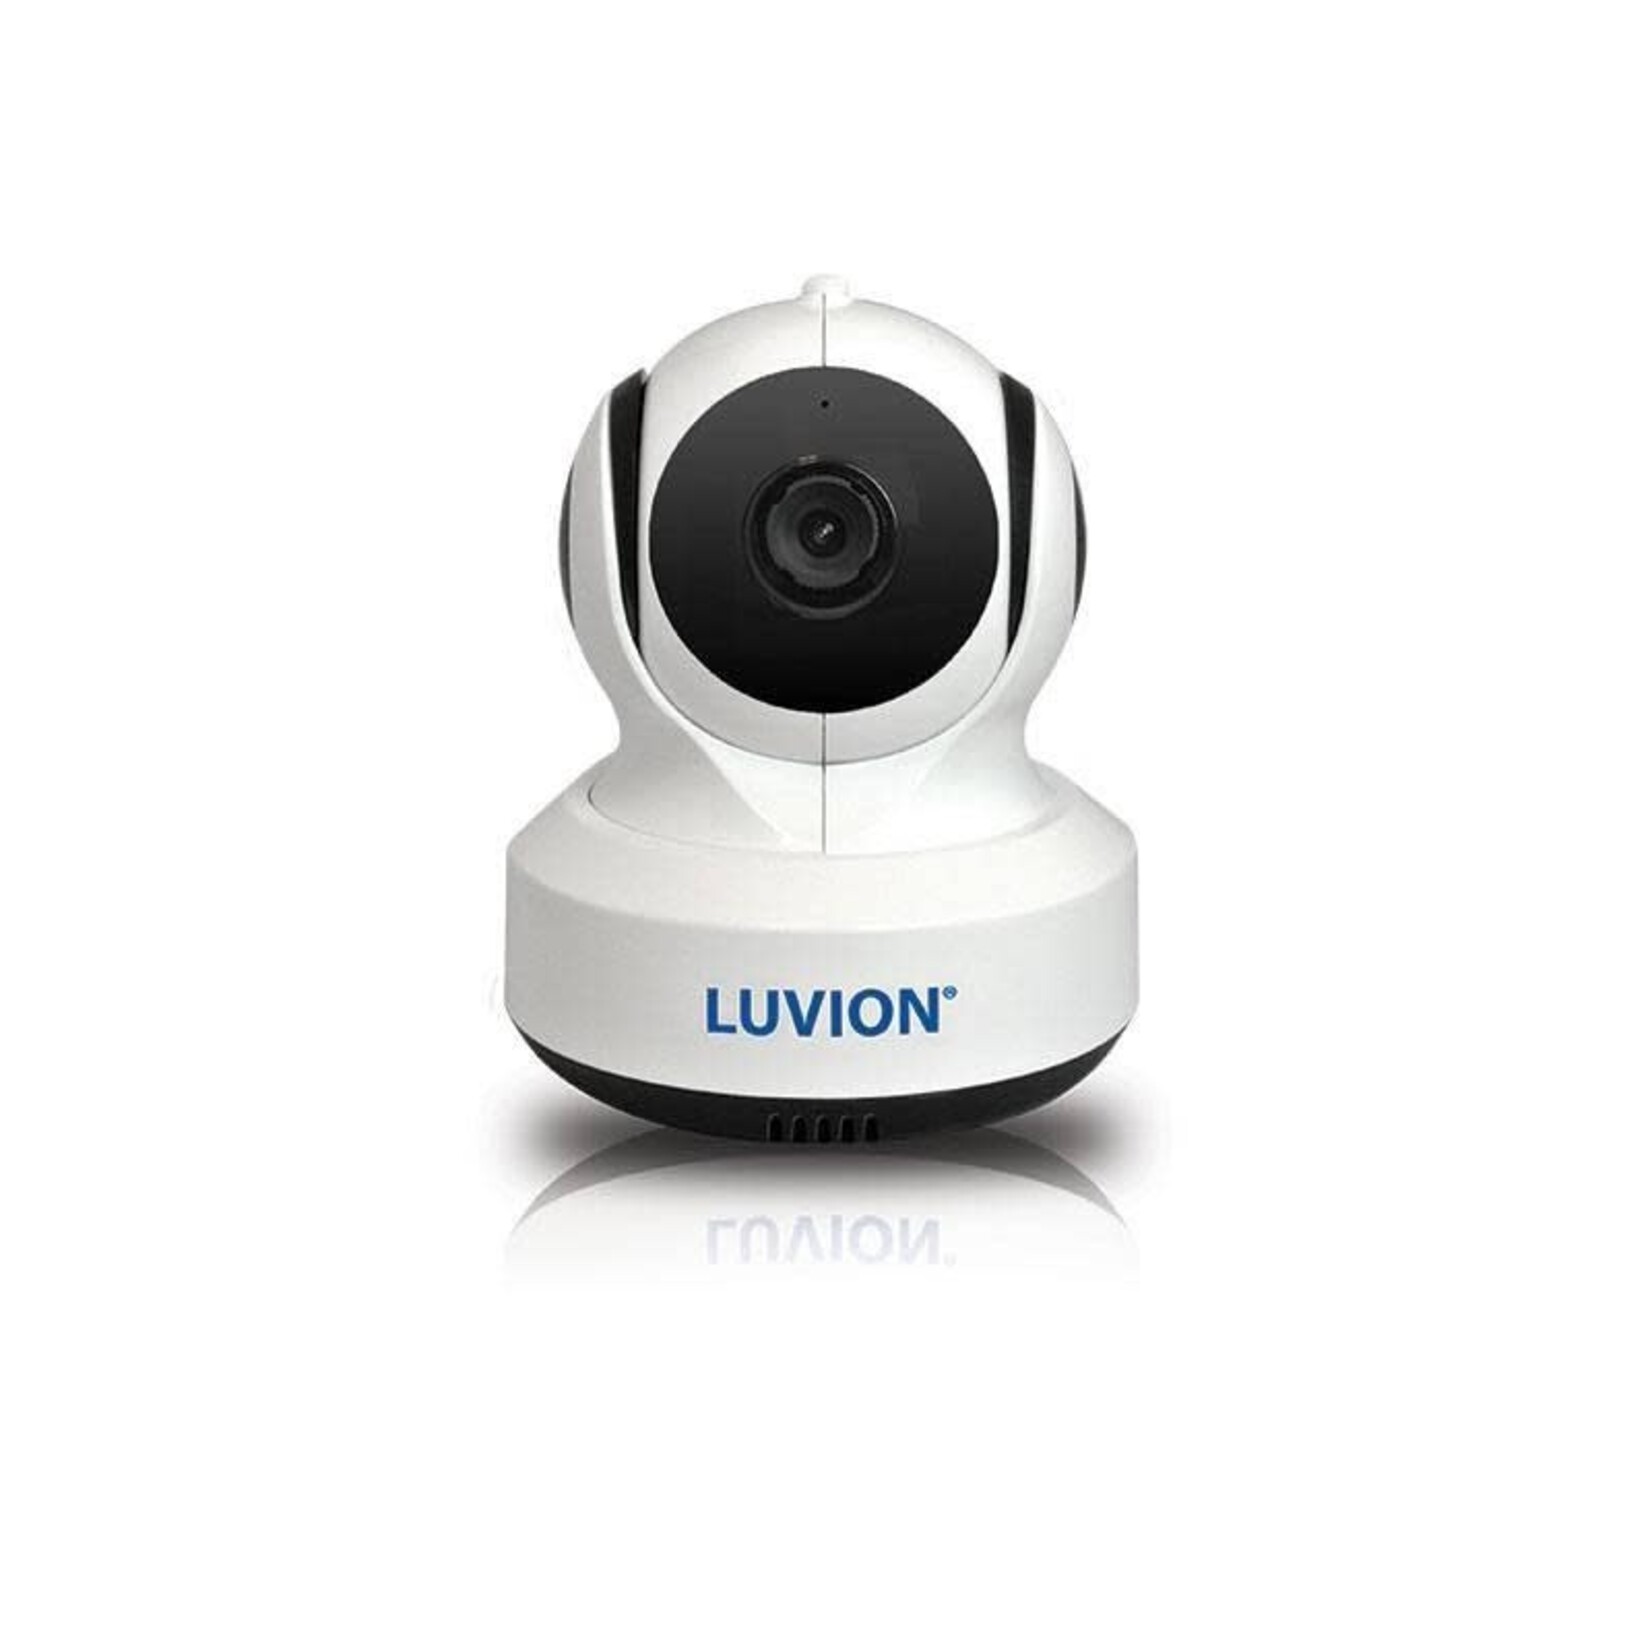 Luvion Luvion - Essential camera